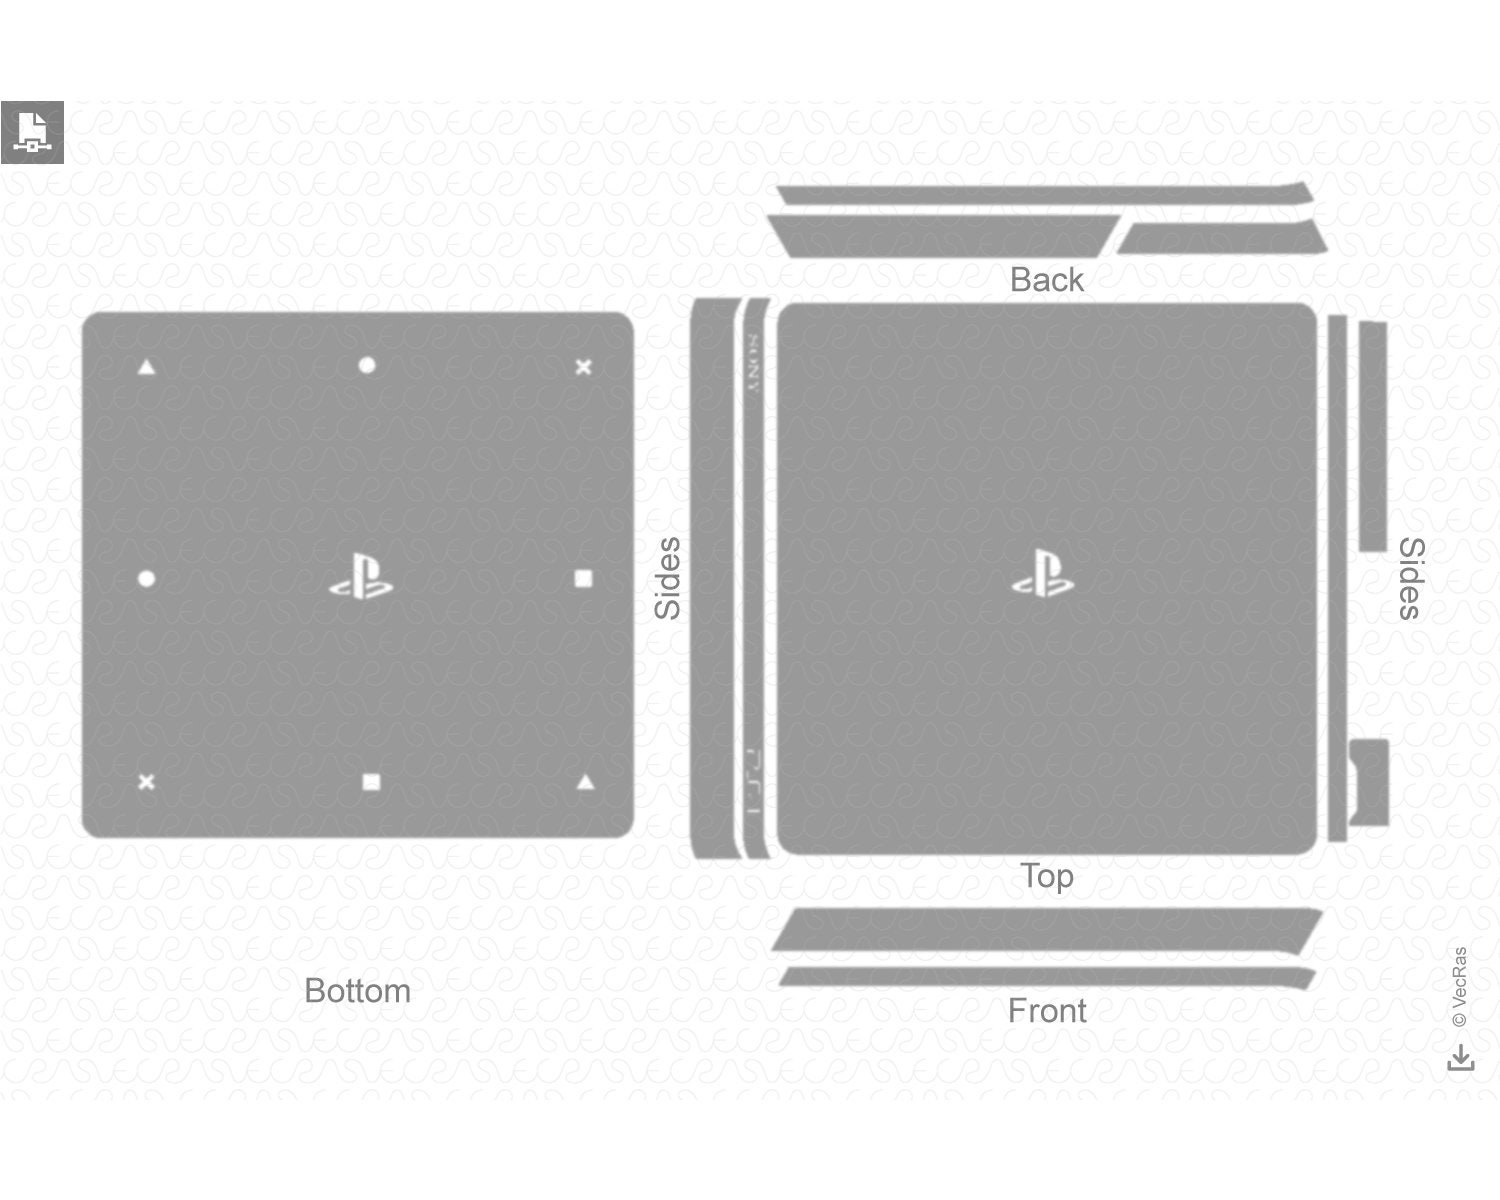 PS4 Pro portátil! Artista 'transforma' o novo console da Sony em laptop 